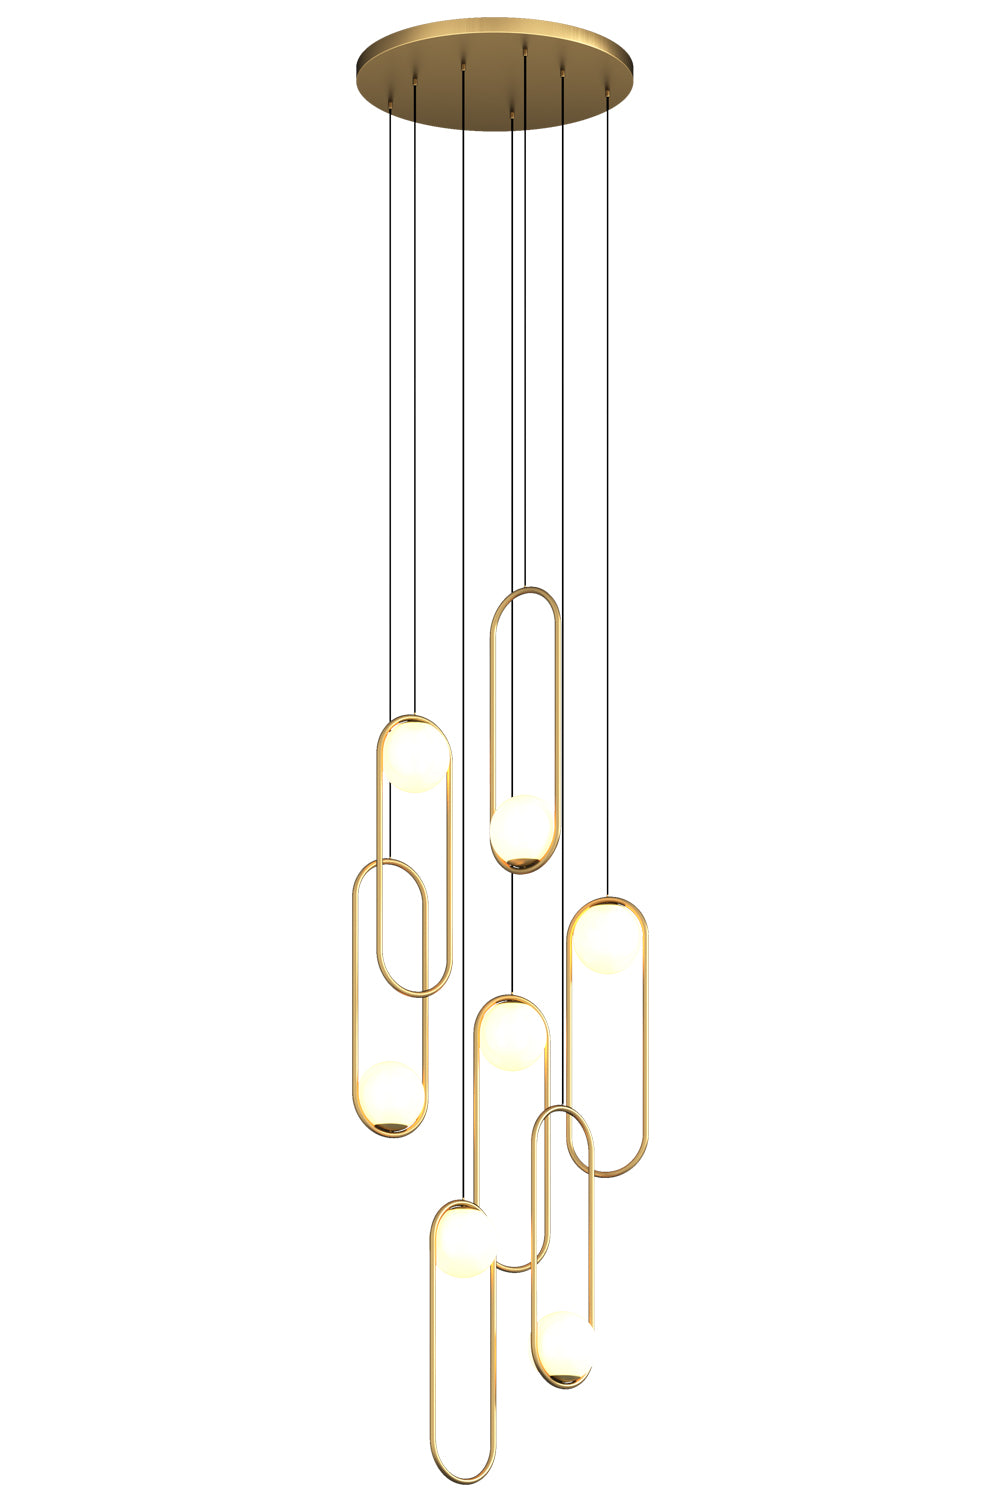 7 multi-light gold pendant for dining room